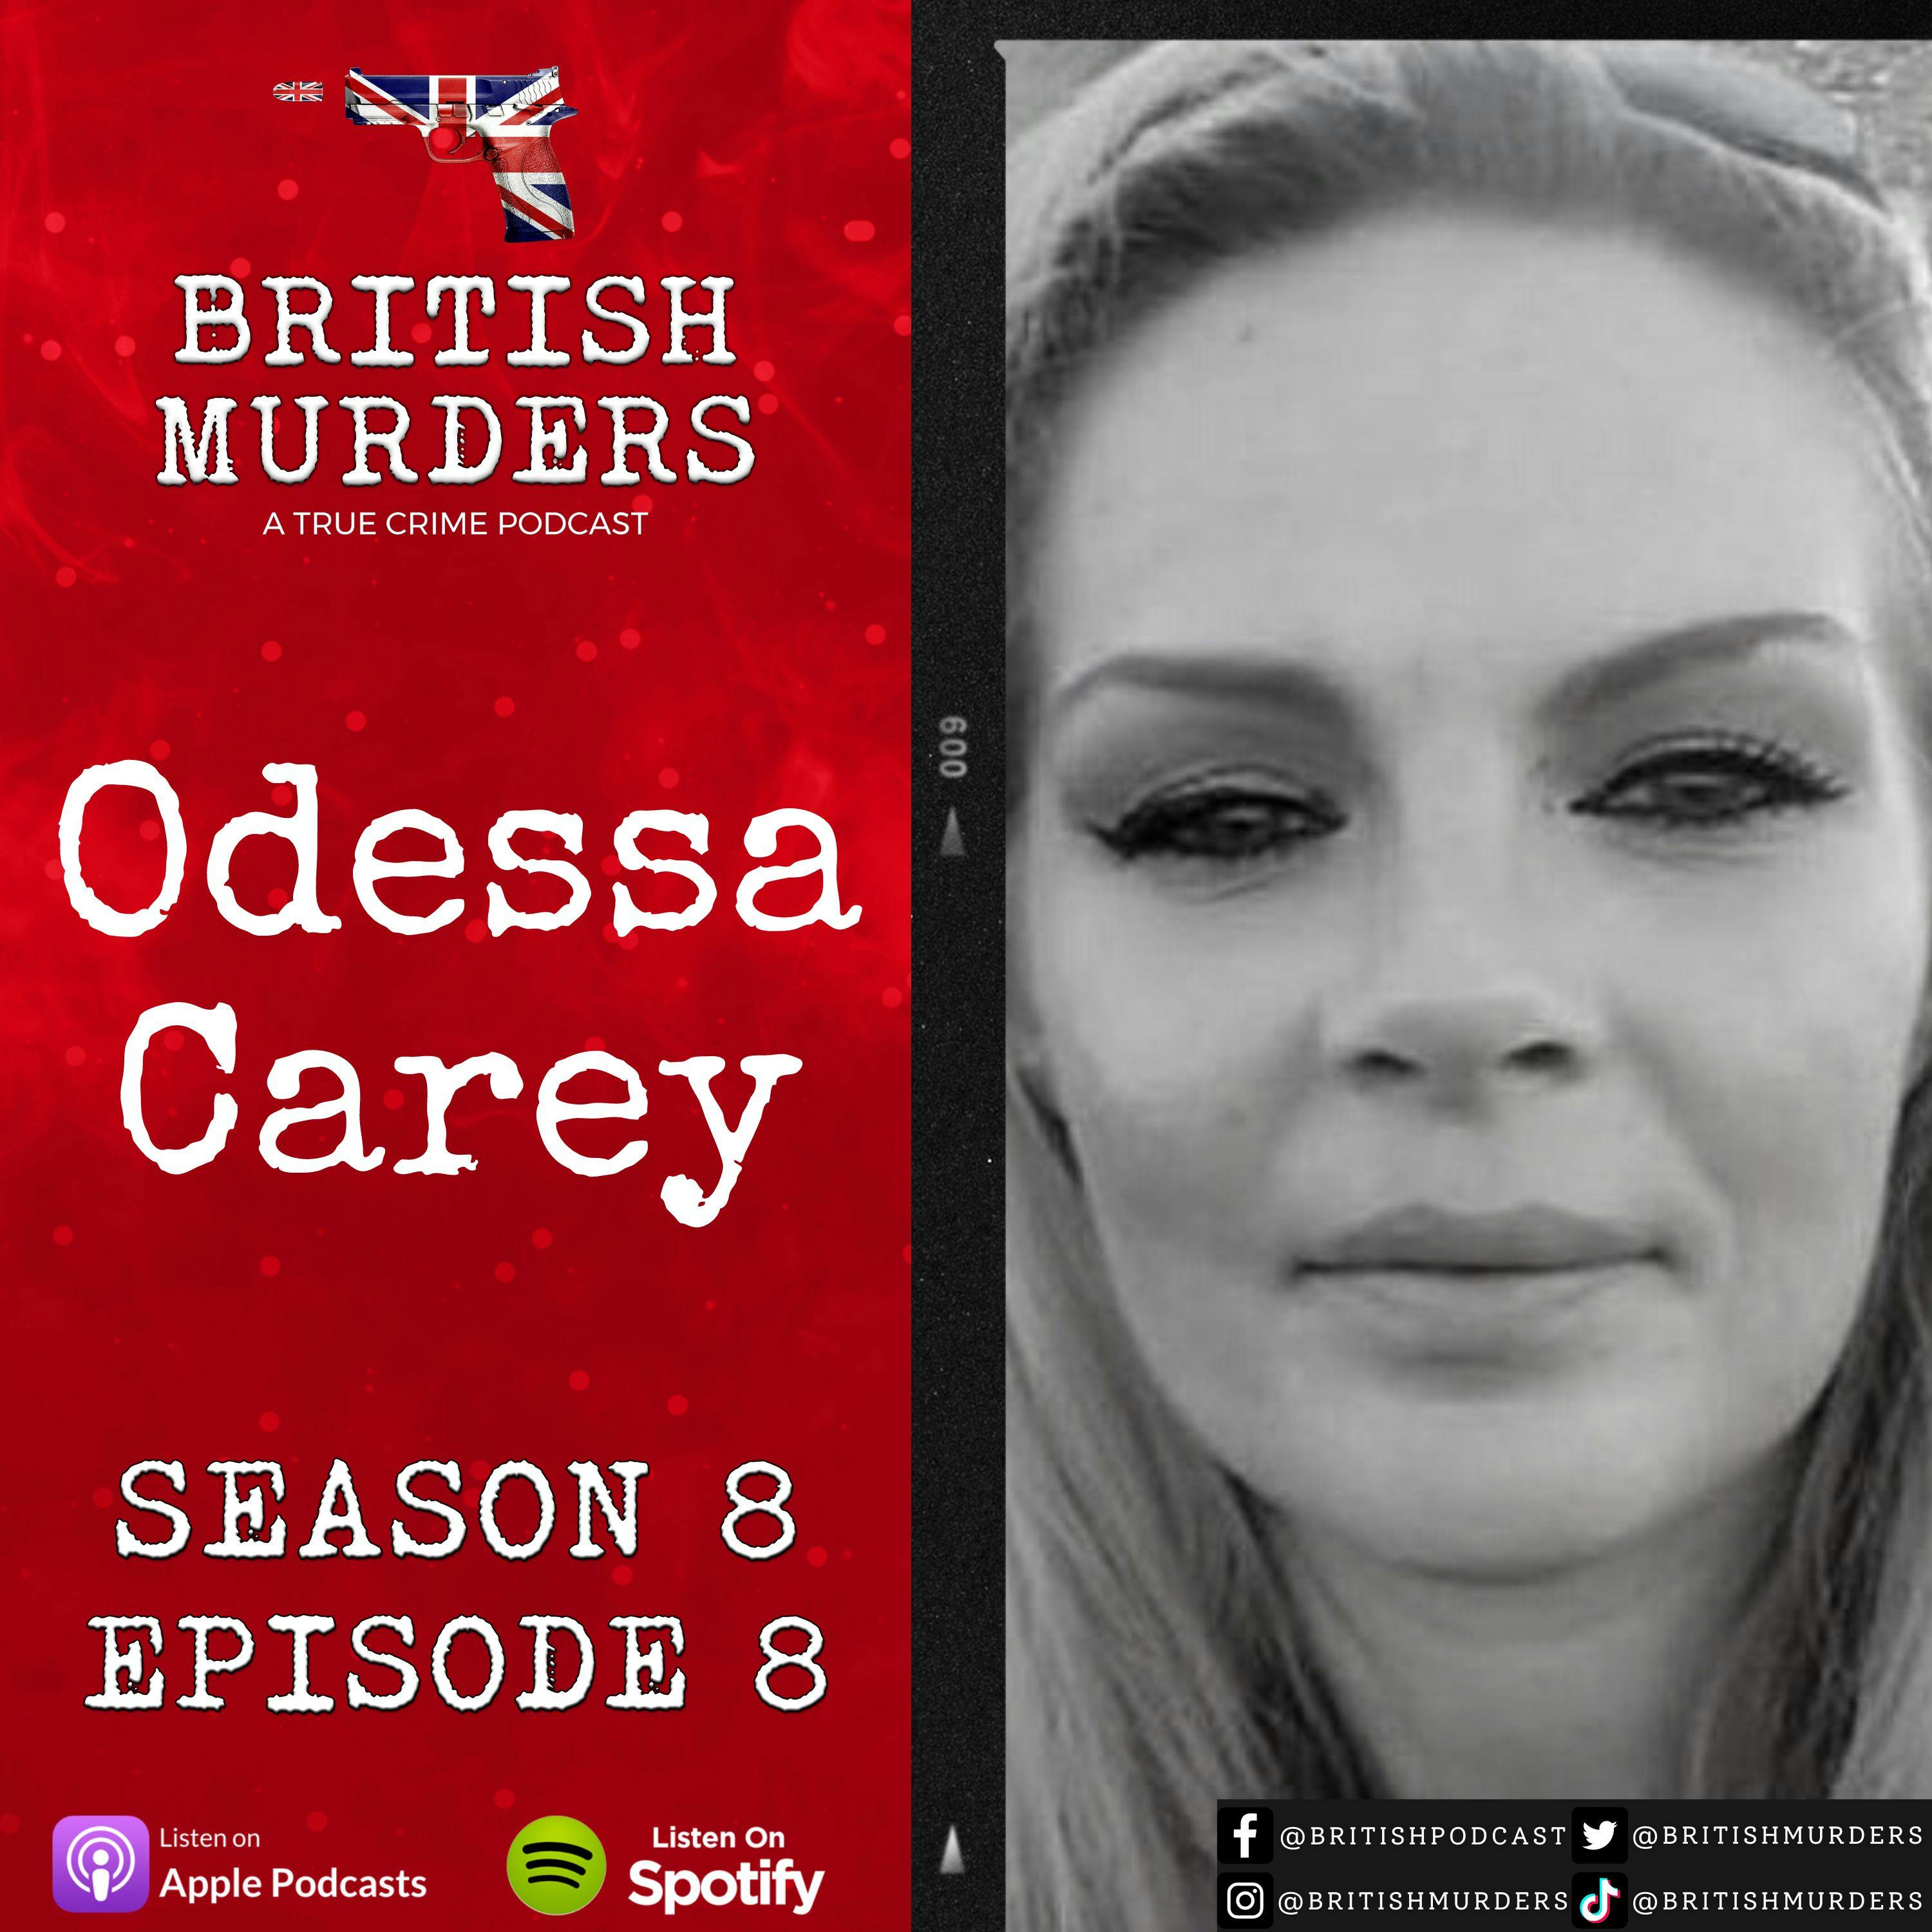 S08E08 | Odessa Carey Jnr | The Manslaughter of Odessa Carey Snr